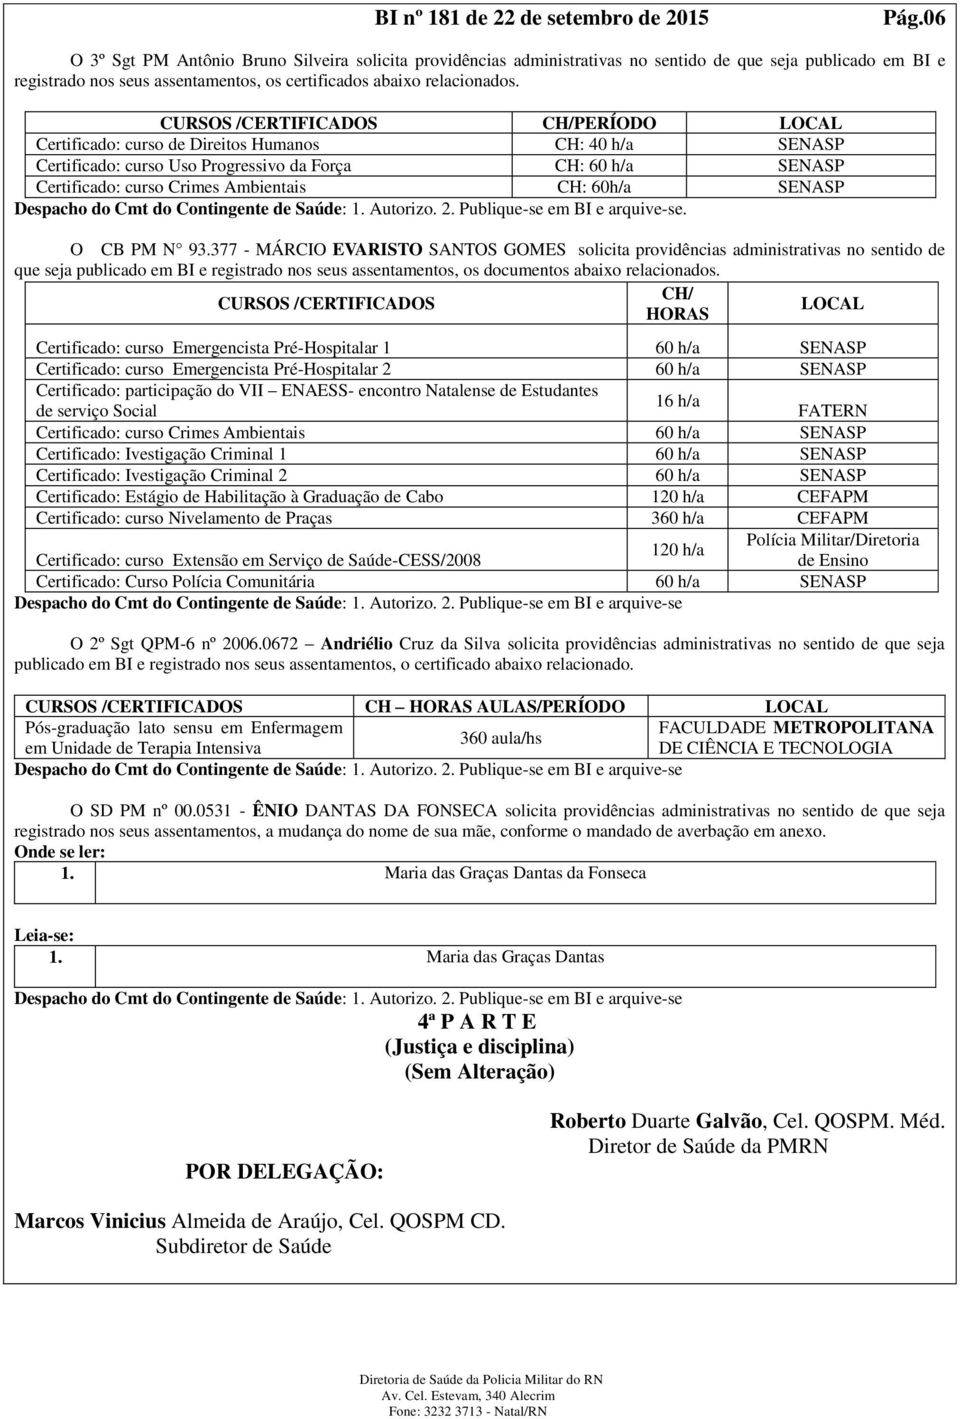 377 - MÁRCIO EVARISTO SANTOS GOMES solicita providências administrativas no sentido de que seja publicado em BI e registrado nos seus assentamentos, os documentos abaixo relacionados.